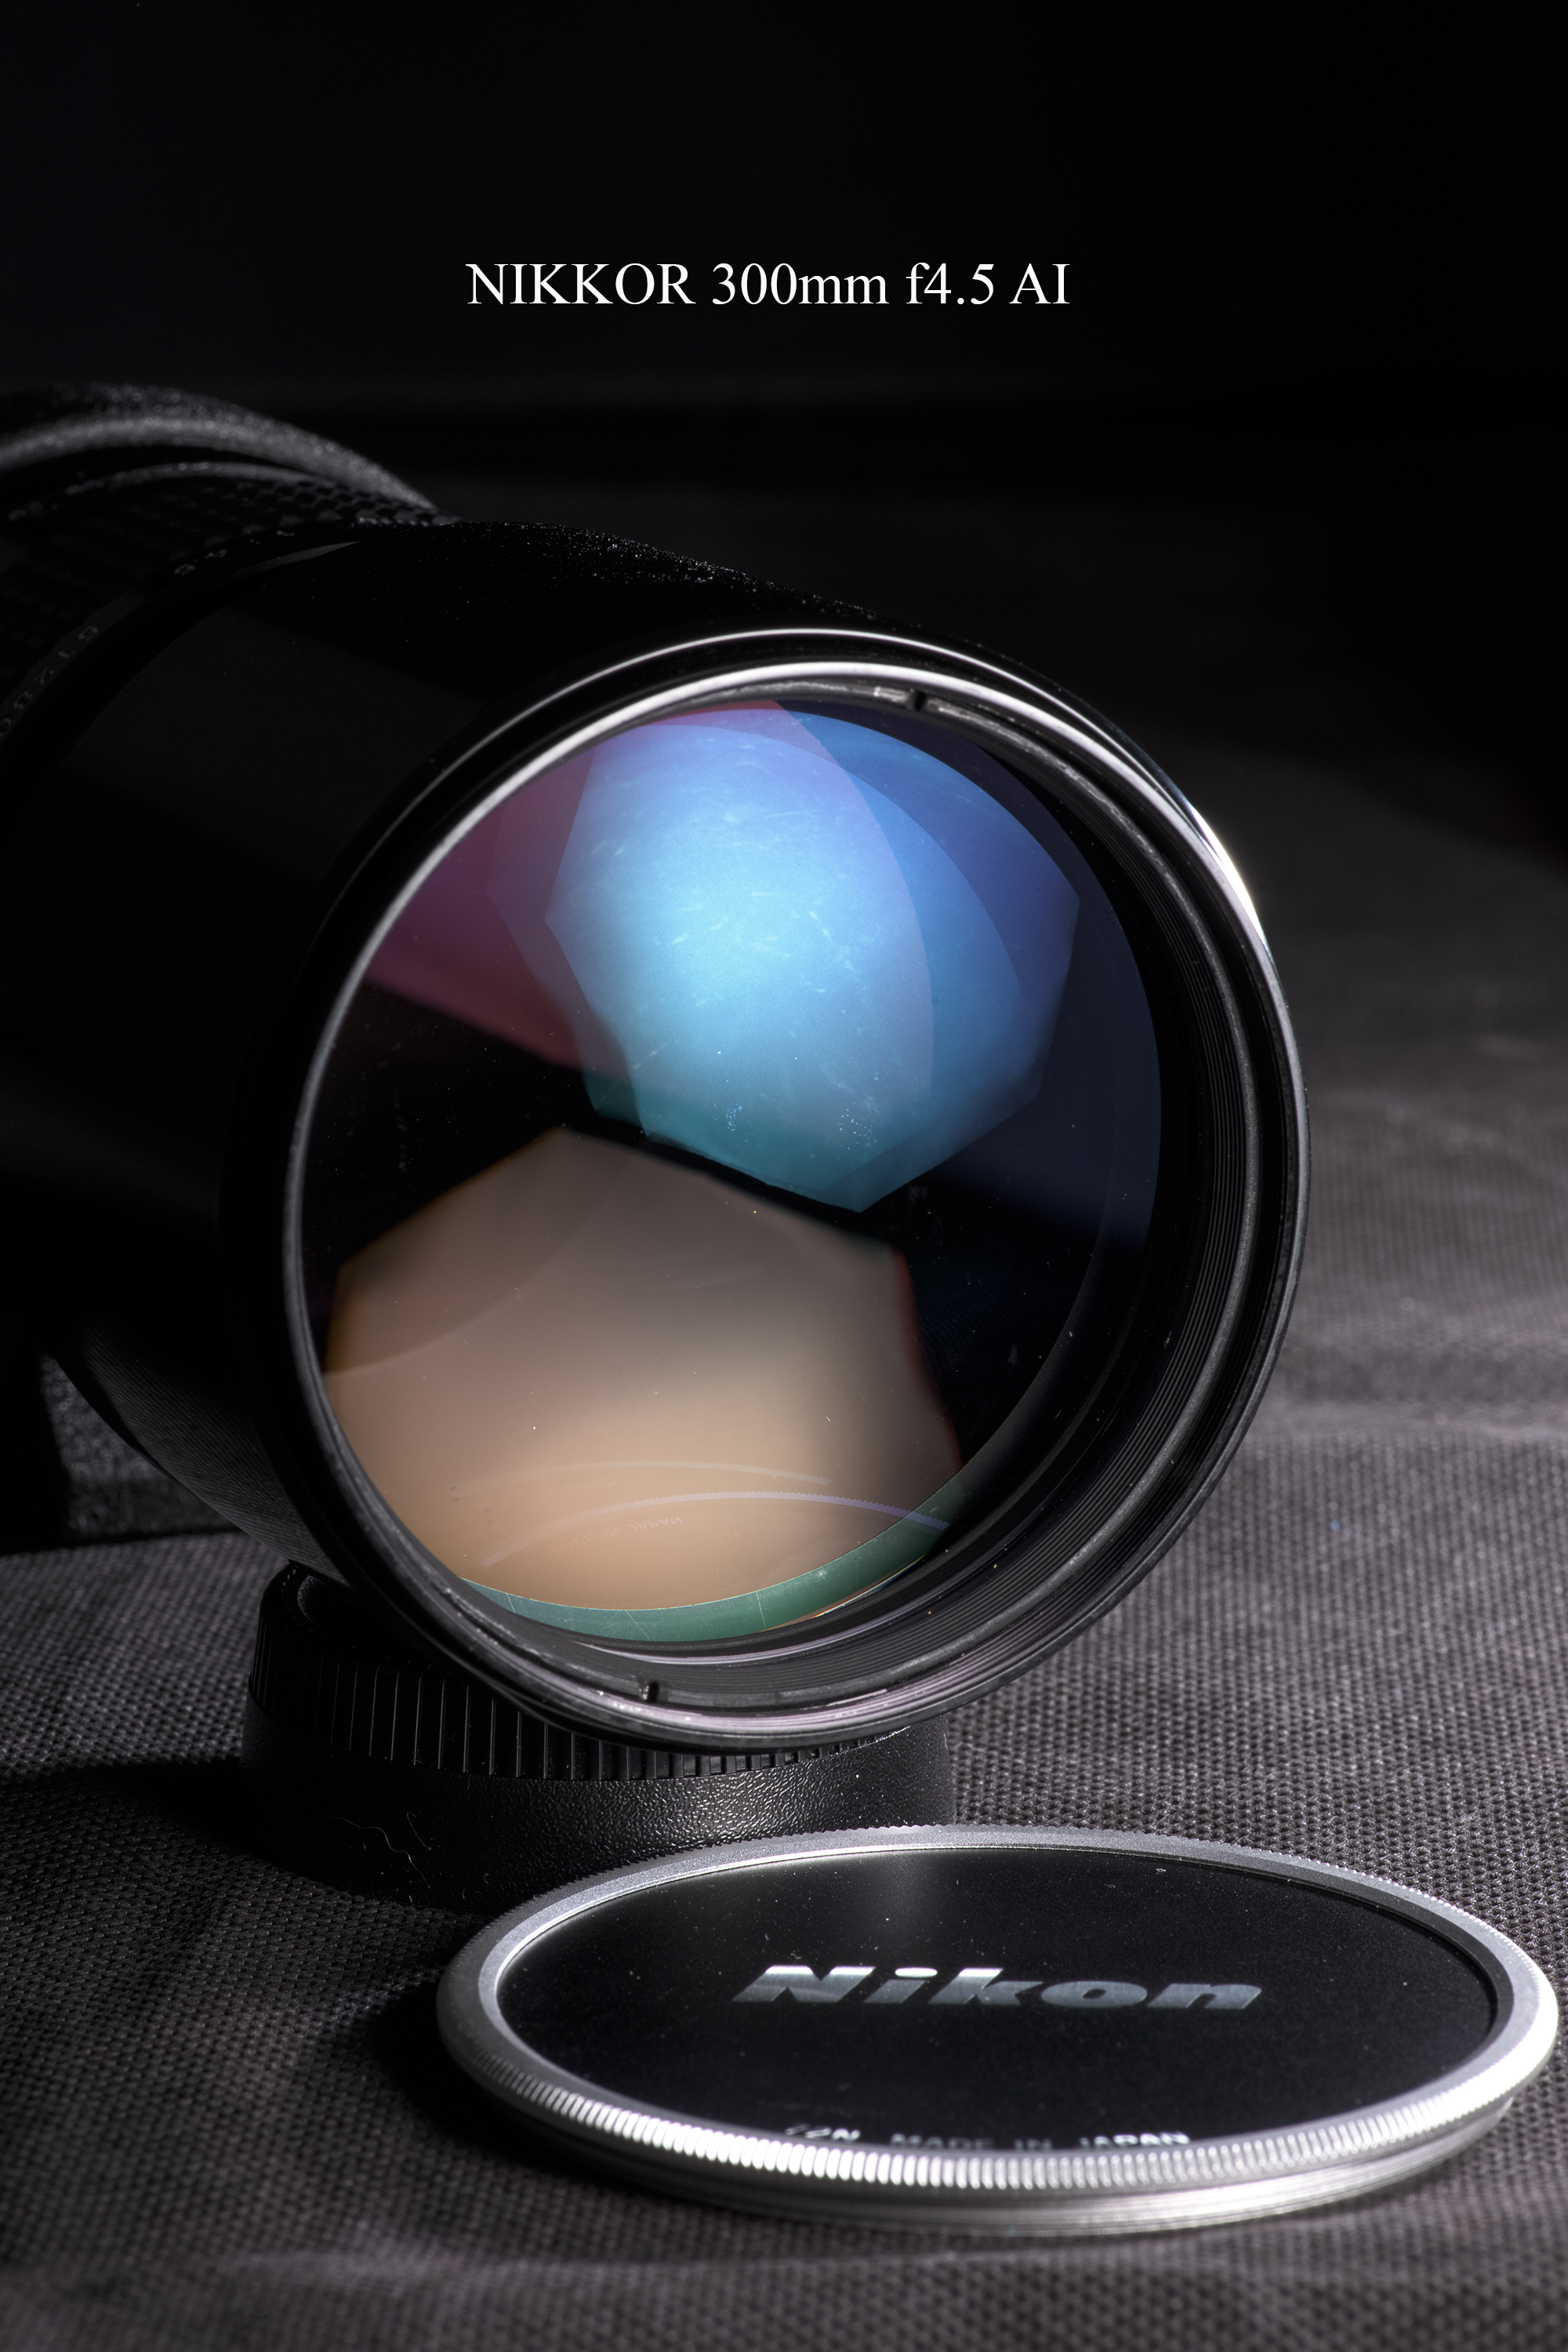 photography Nikon Nikkor 300mm ai ais lens review | Steve James' Blog